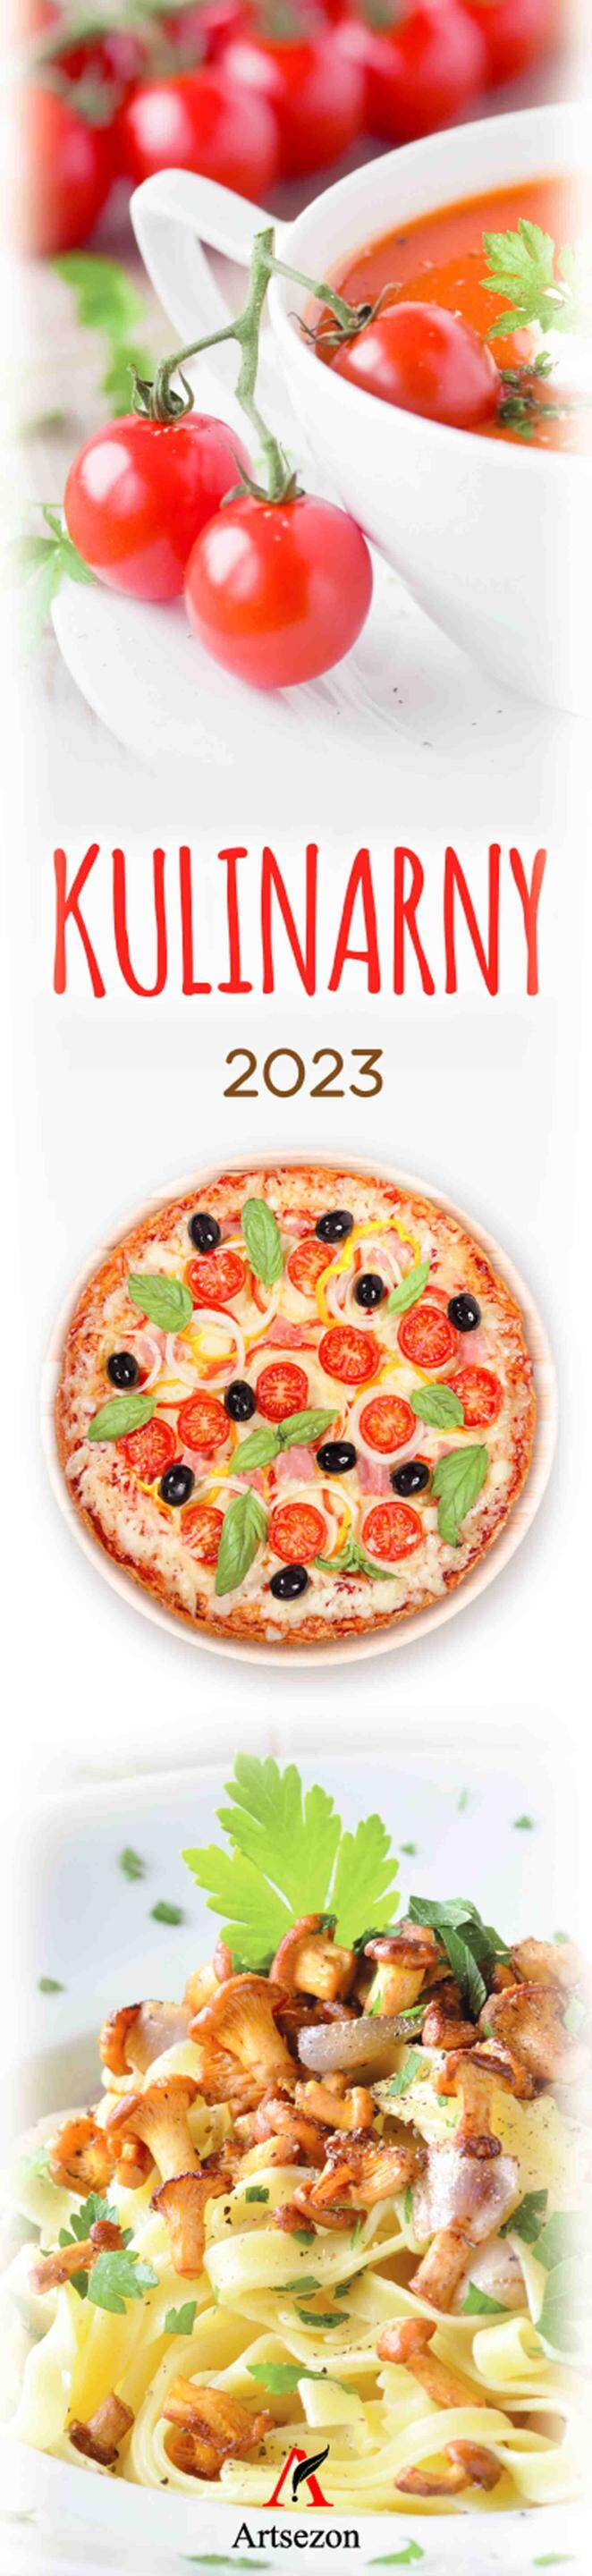 Kalendarz 2023 paskowy kulinarny z przepisami 1 szt. mix